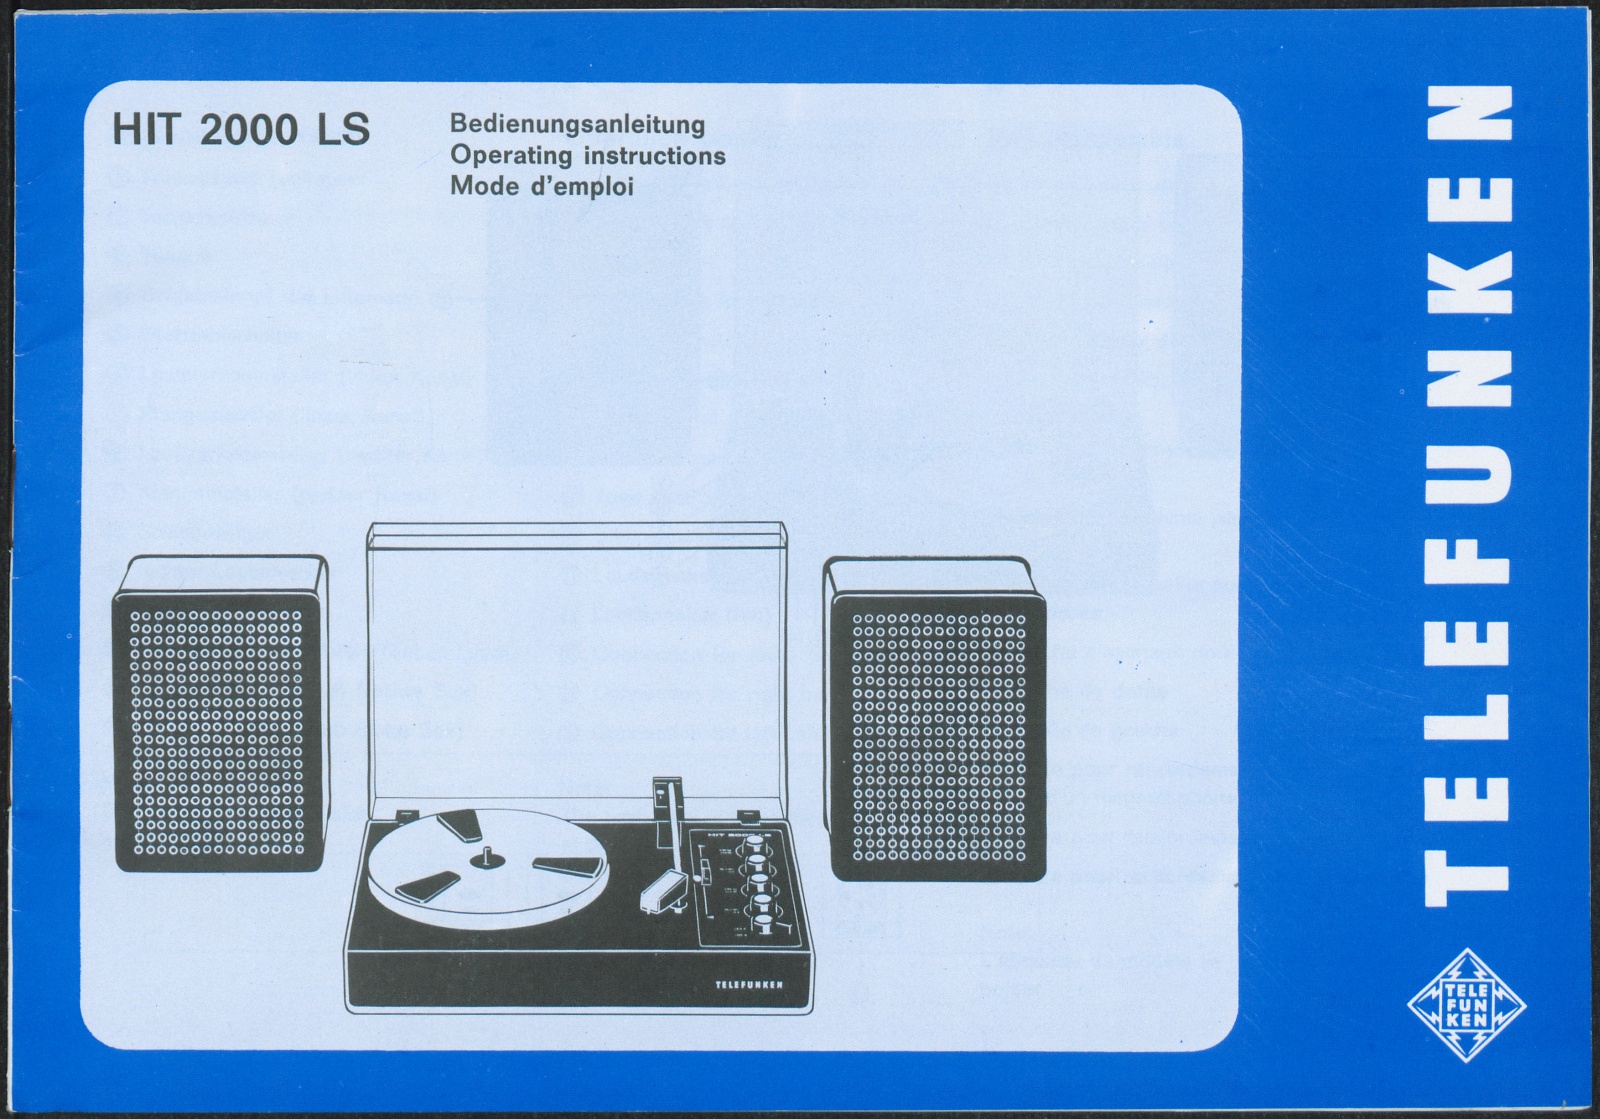 Bedienungsanleitung: Bedienungsanleitung für Telefunken HIT 2000 LS (Stiftung Deutsches Technikmuseum Berlin CC0)